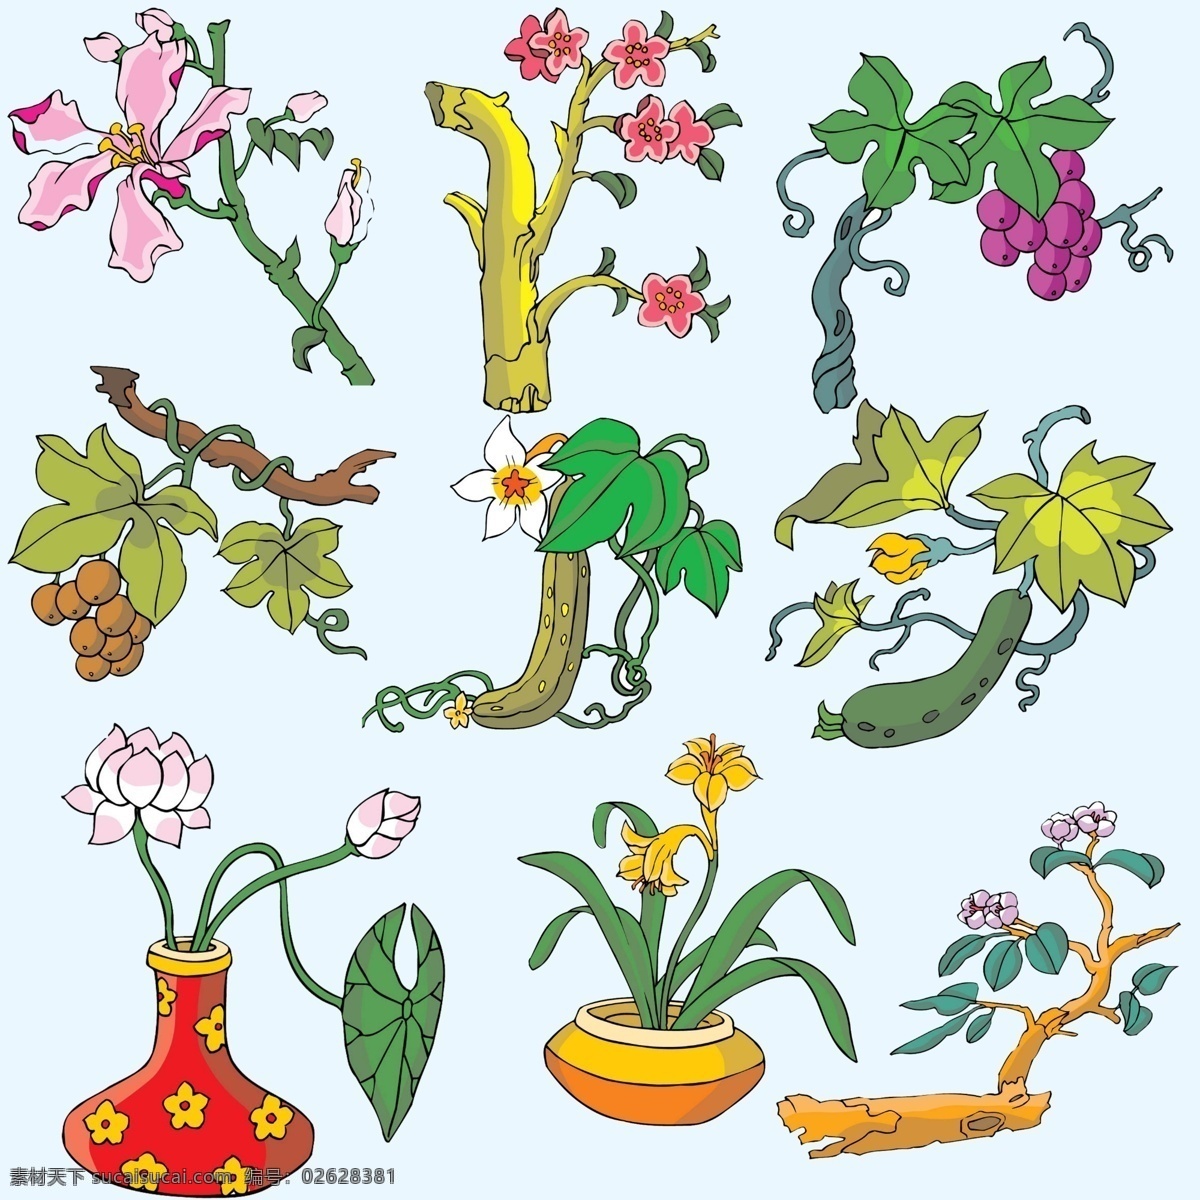 手绘 花卉 ps 分层 手绘树木 手绘素材 卡通素材 卡通花朵 创意造型 创意植物 创意盆栽 插画配图 卡通配图 白色